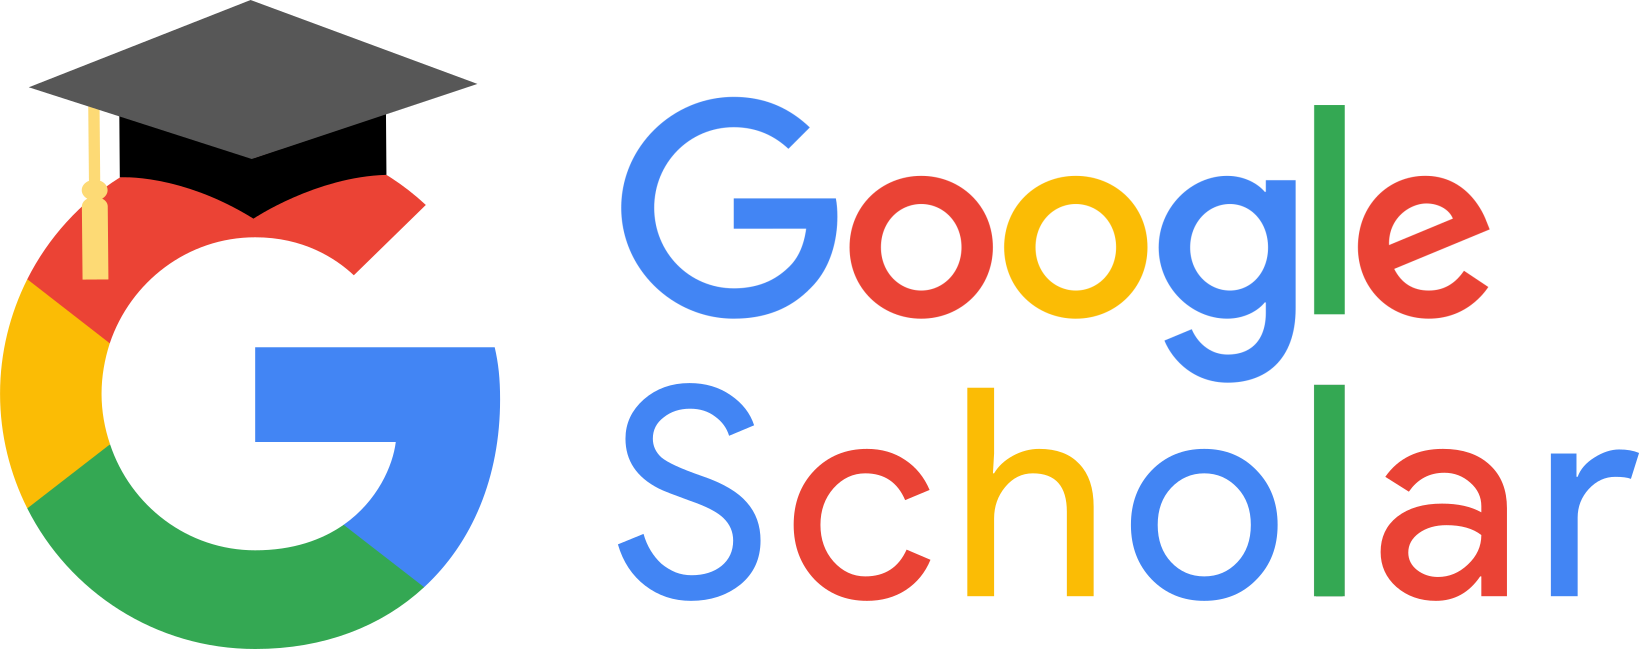 Resultado de imagen de google scholar logo